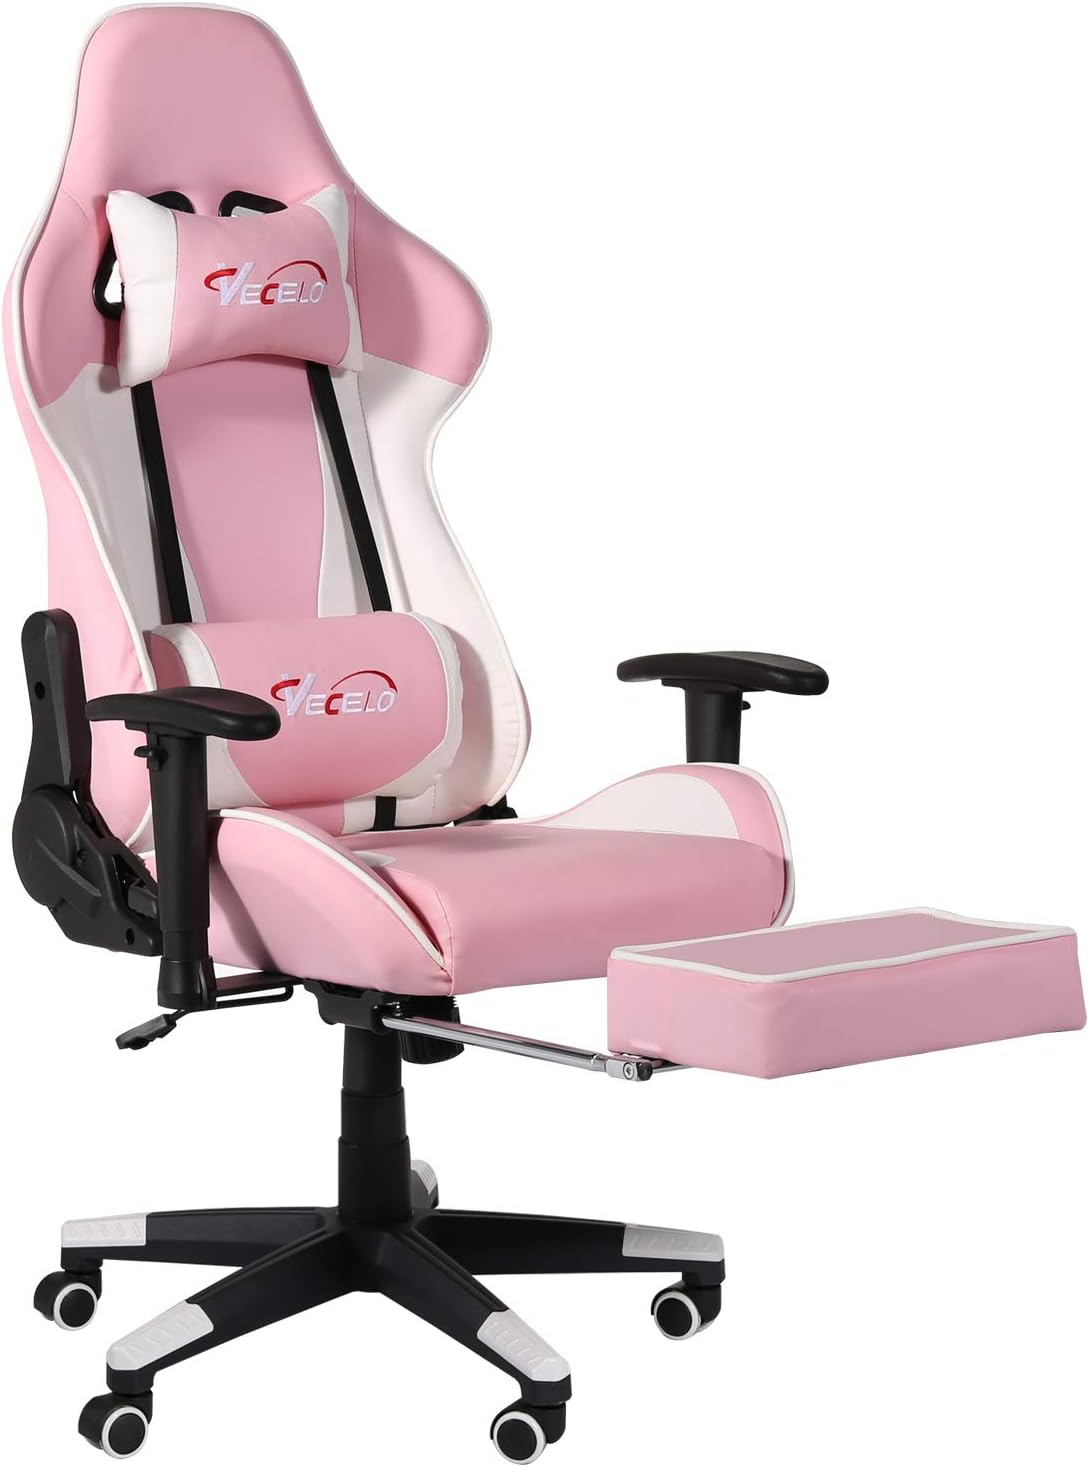 VECELO Computer Gaming Chair